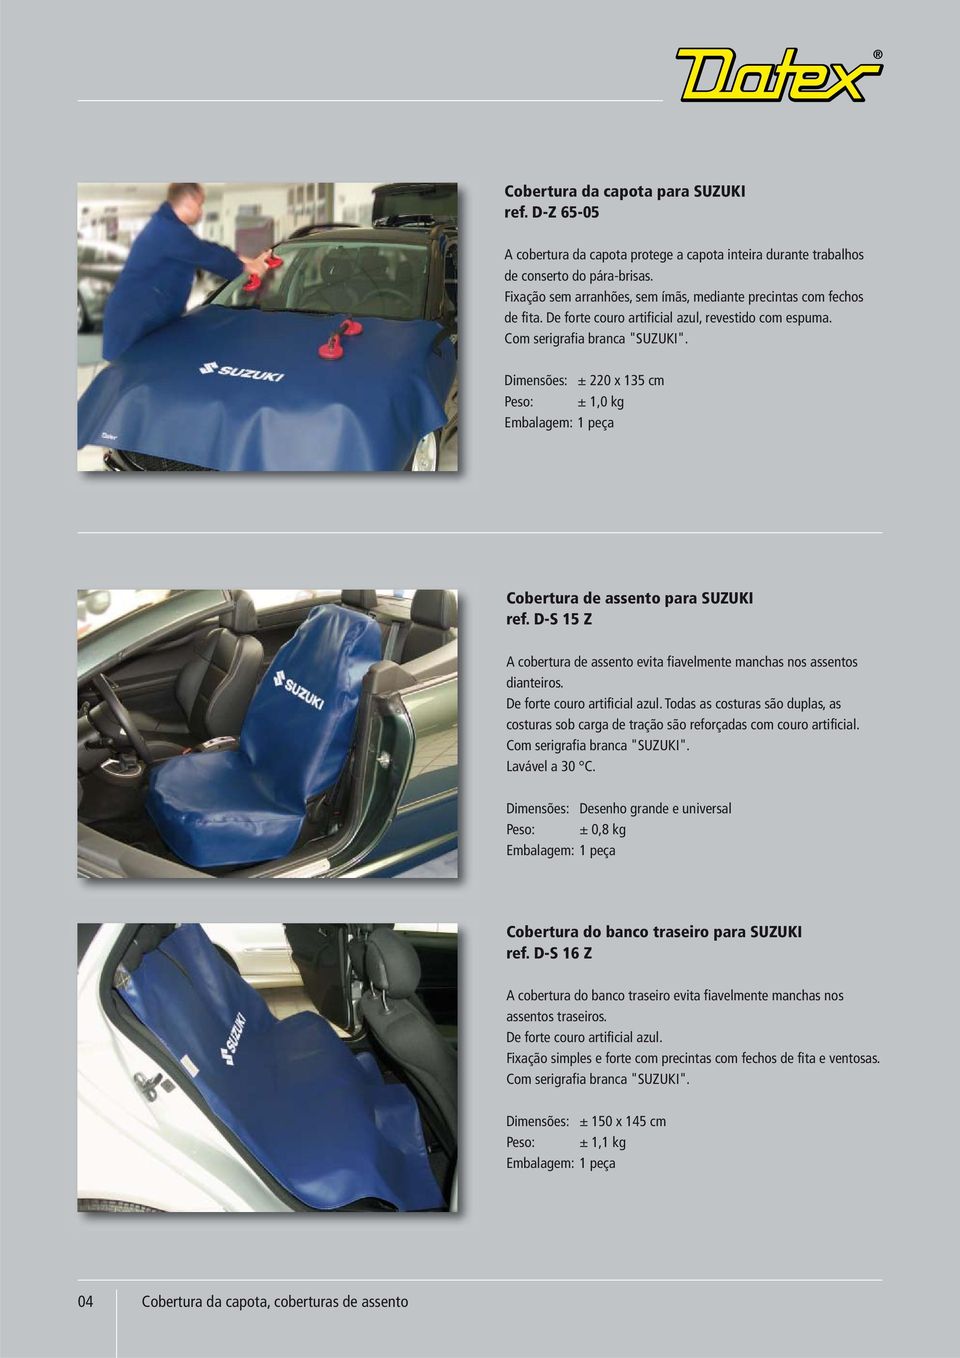 Dimensões: ± 220 x 135 cm Peso: ± 1,0 kg Embalagem: 1 peça Cobertura de assento para SUZUKI ref. D-S 15 Z A cobertura de assento evita fiavelmente manchas nos assentos dianteiros.